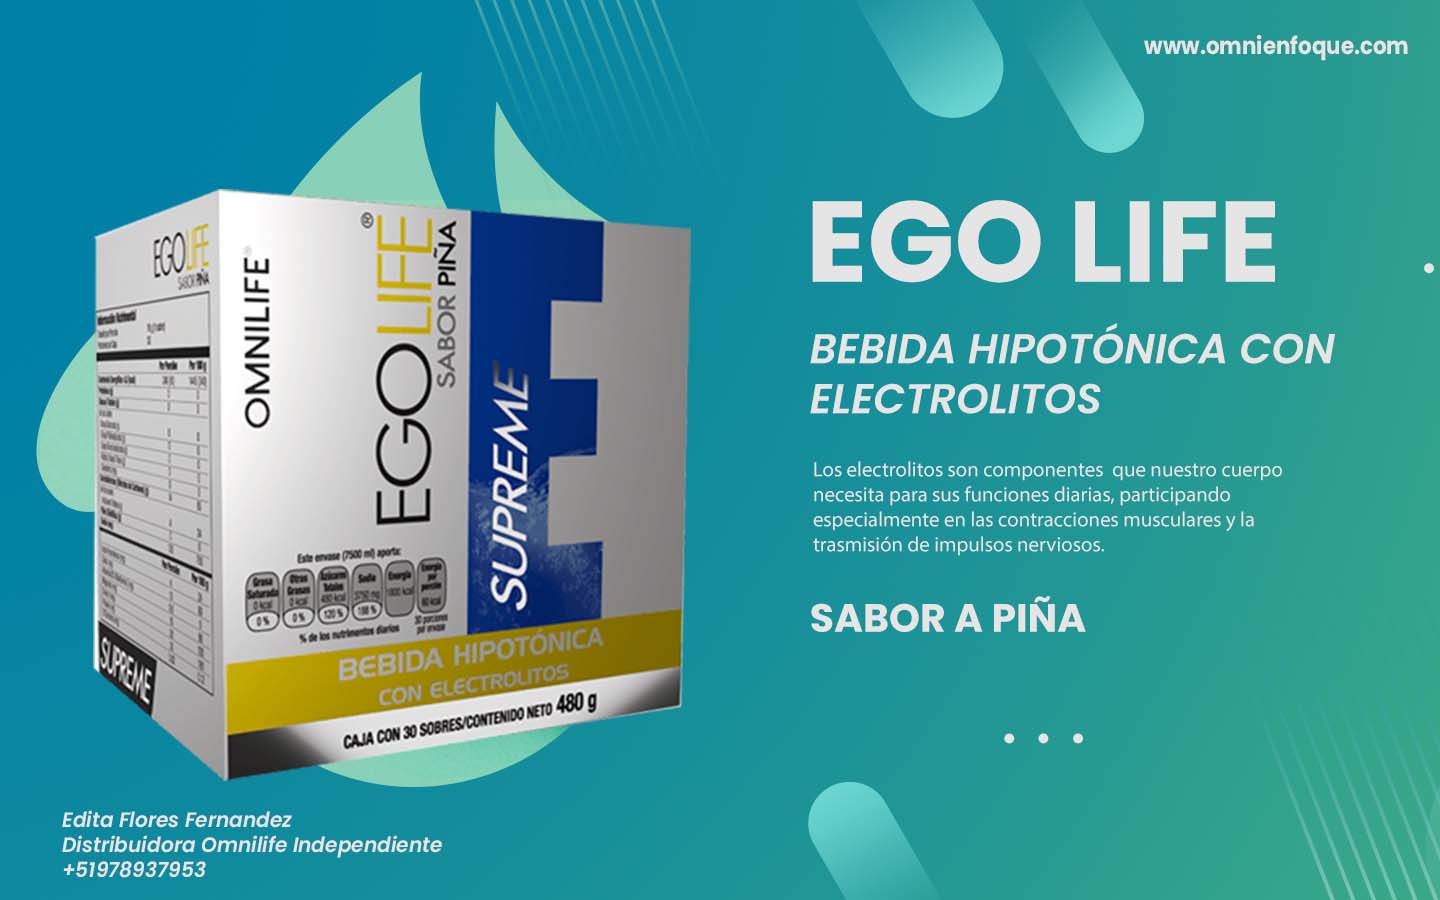 Ego Life de Omnilife es una bebida Hipotonica con electrolitos